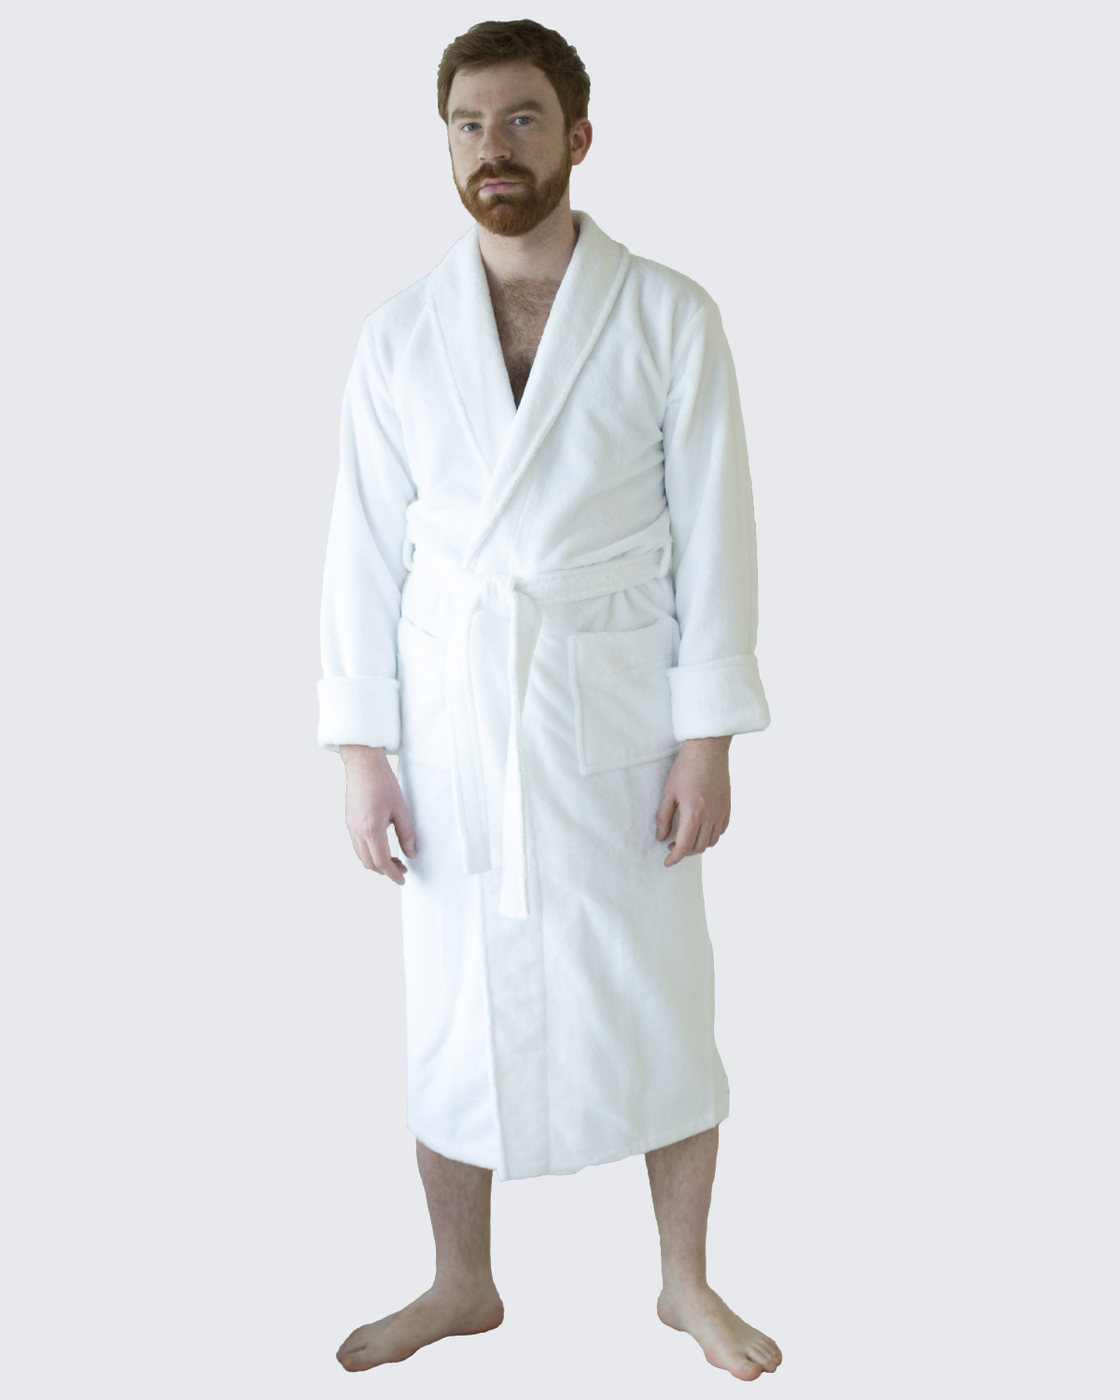 Купить халат для бани. Халат мужской Ваккас-текстиль. Халат банный iv70529. Банный халат мужской. Халат для сауны.